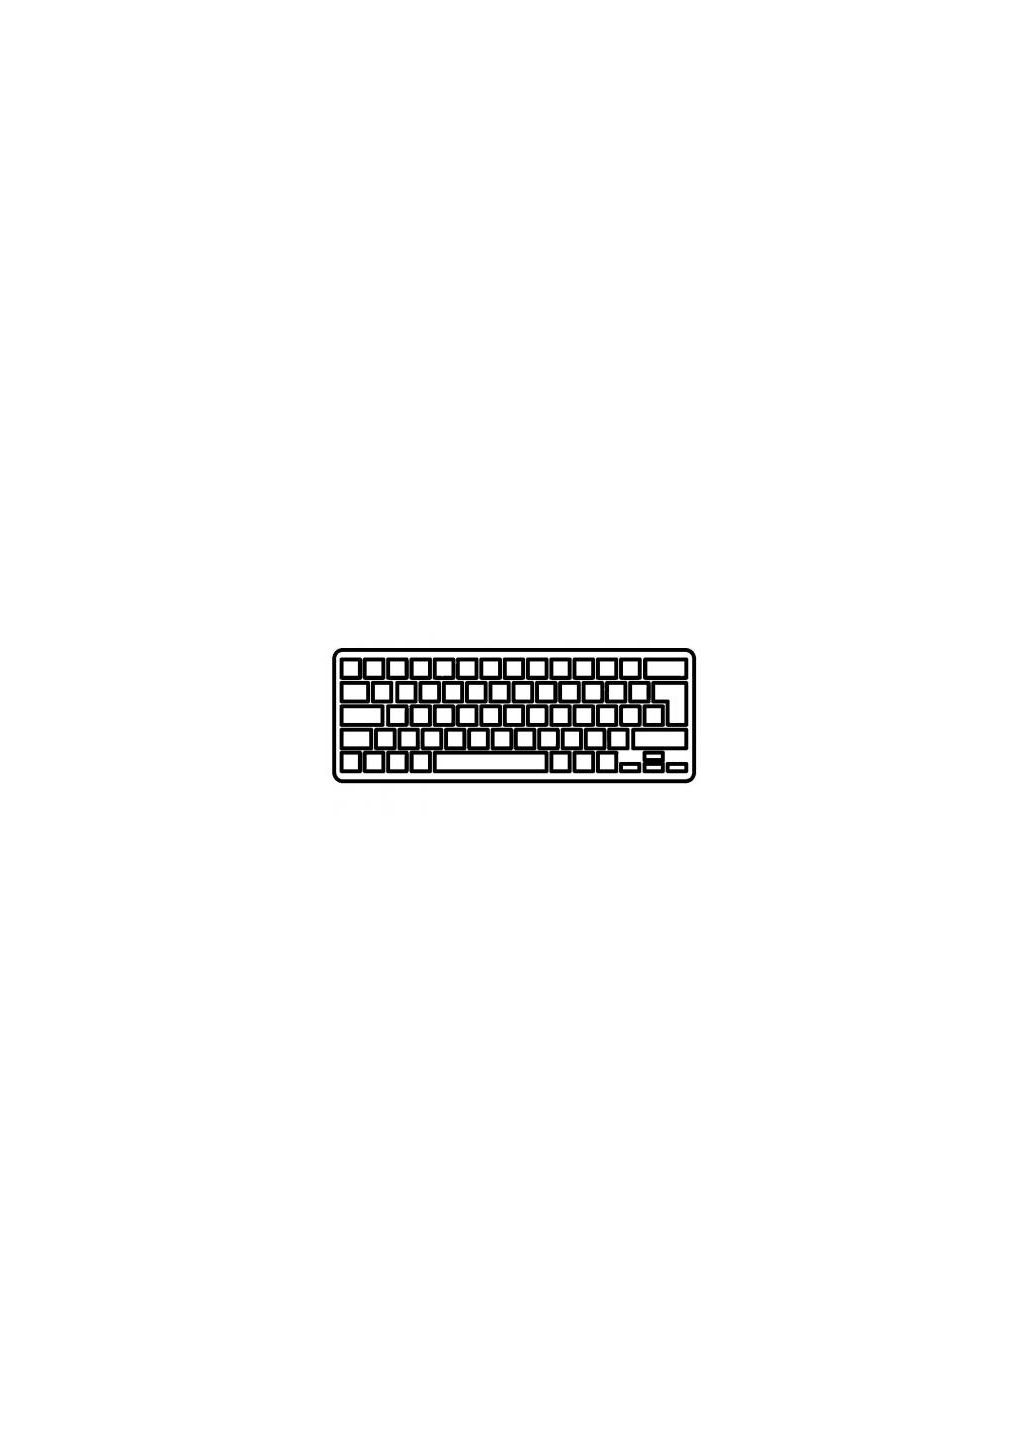 Клавиатура ноутбука (A43050) Dell studio 1555/1557 черная ru (276707124)